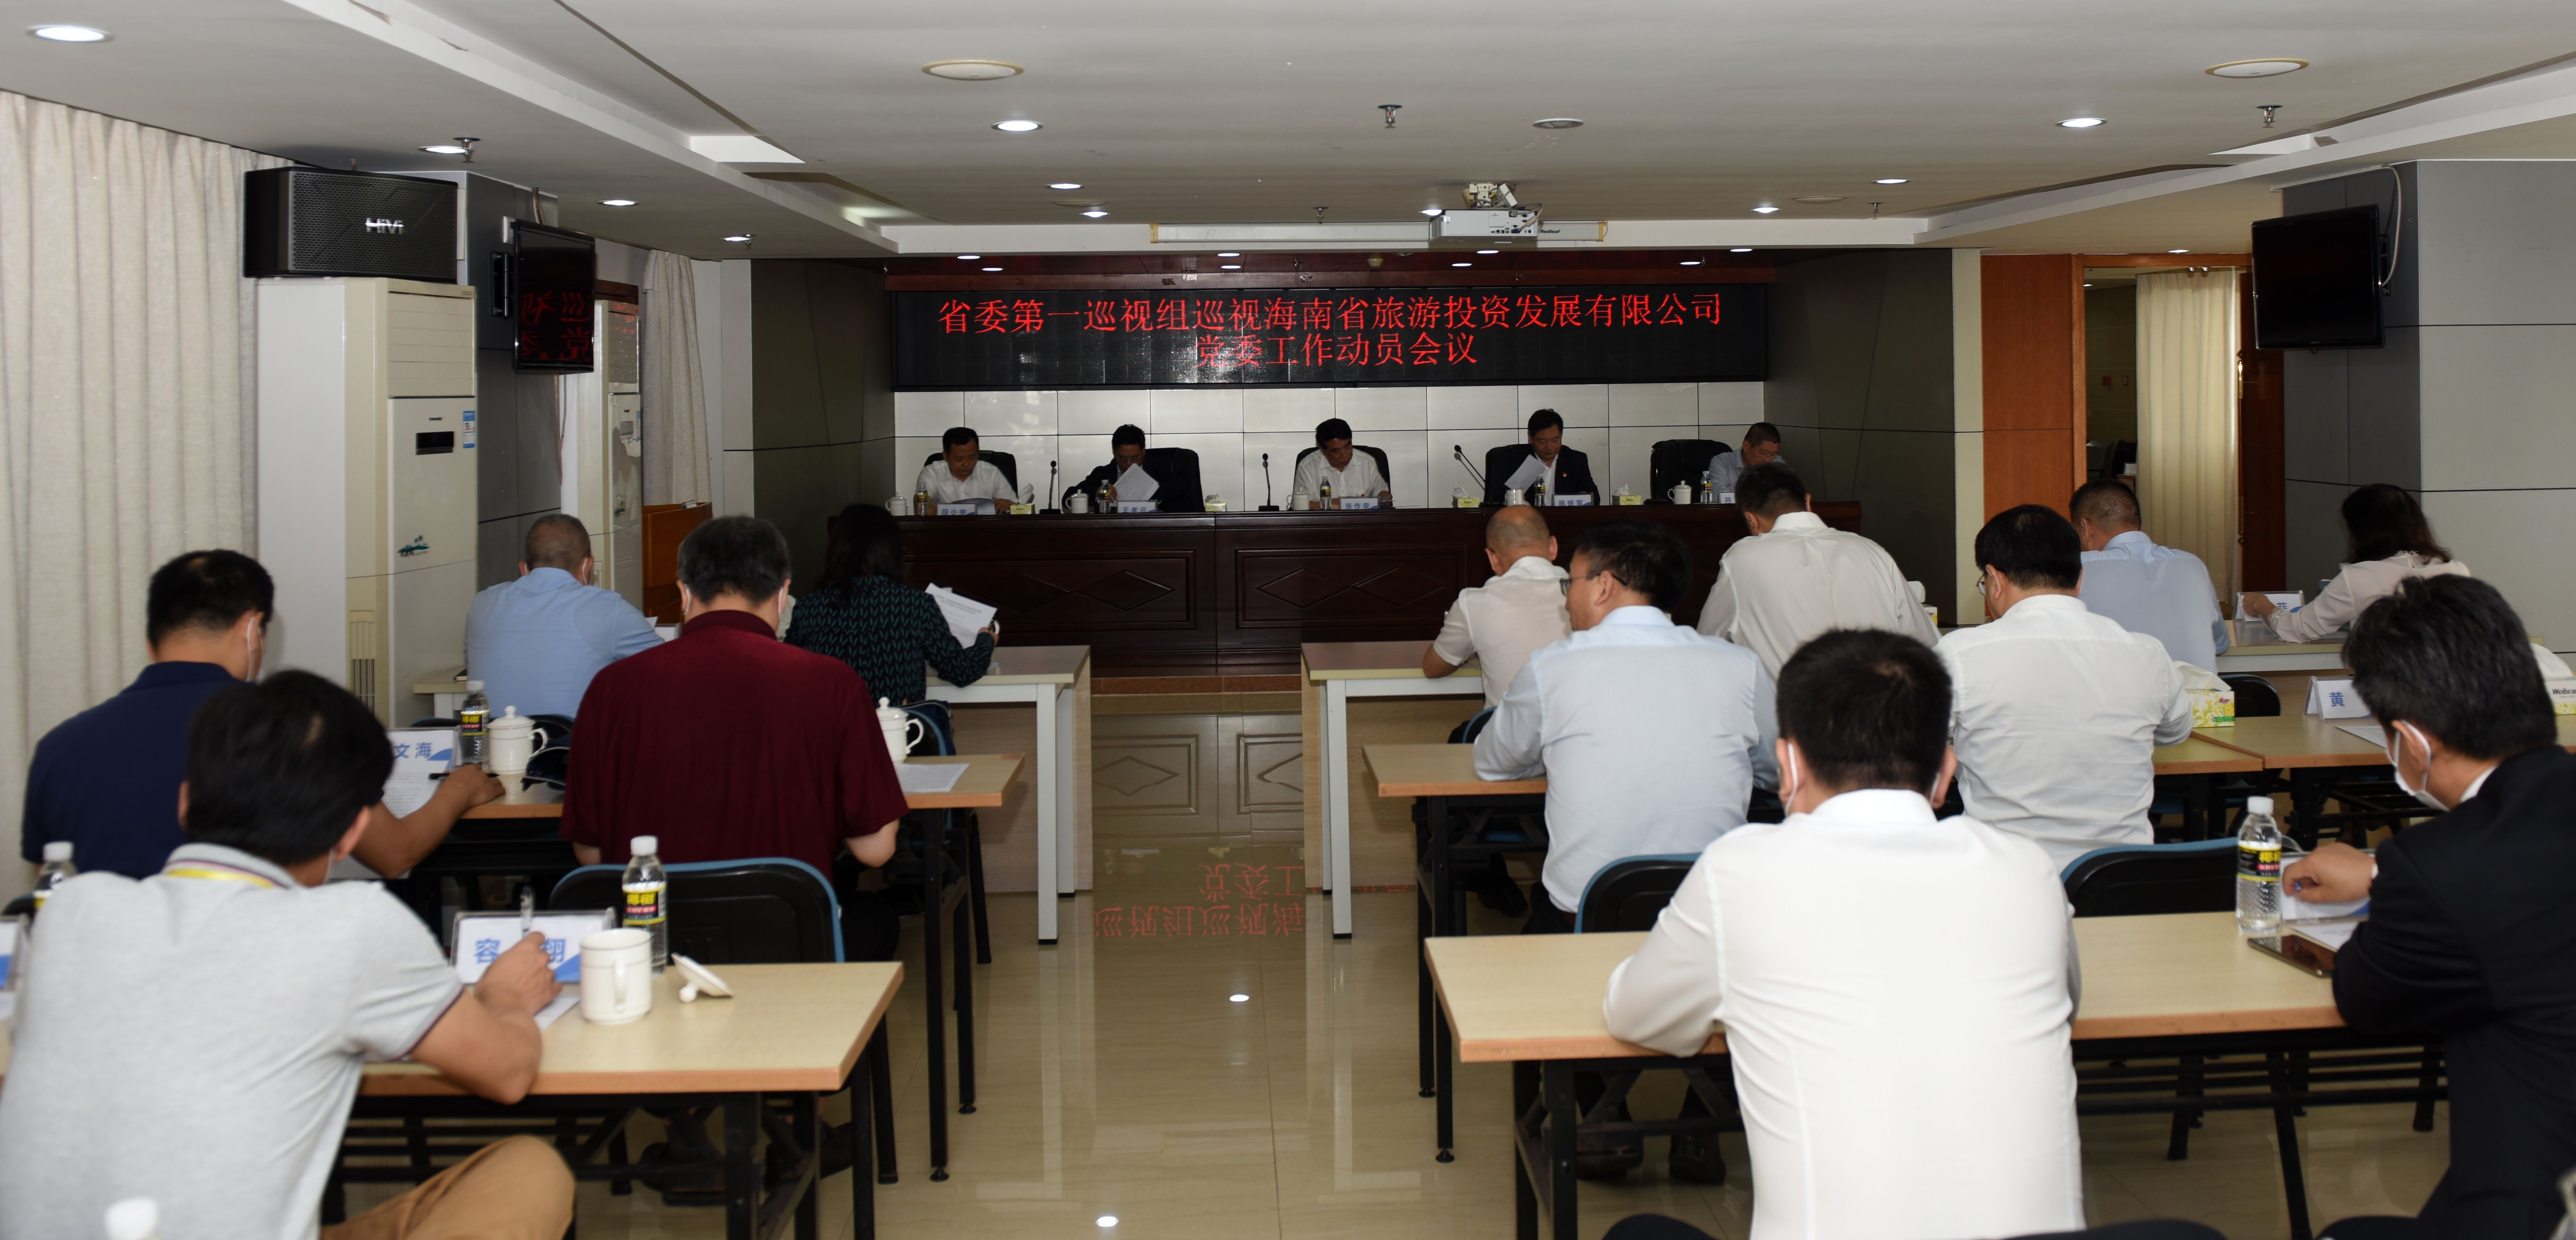 重庆大学召开落实中央第七巡视组巡视反馈意见整改工作动员会-重庆大学信息公开